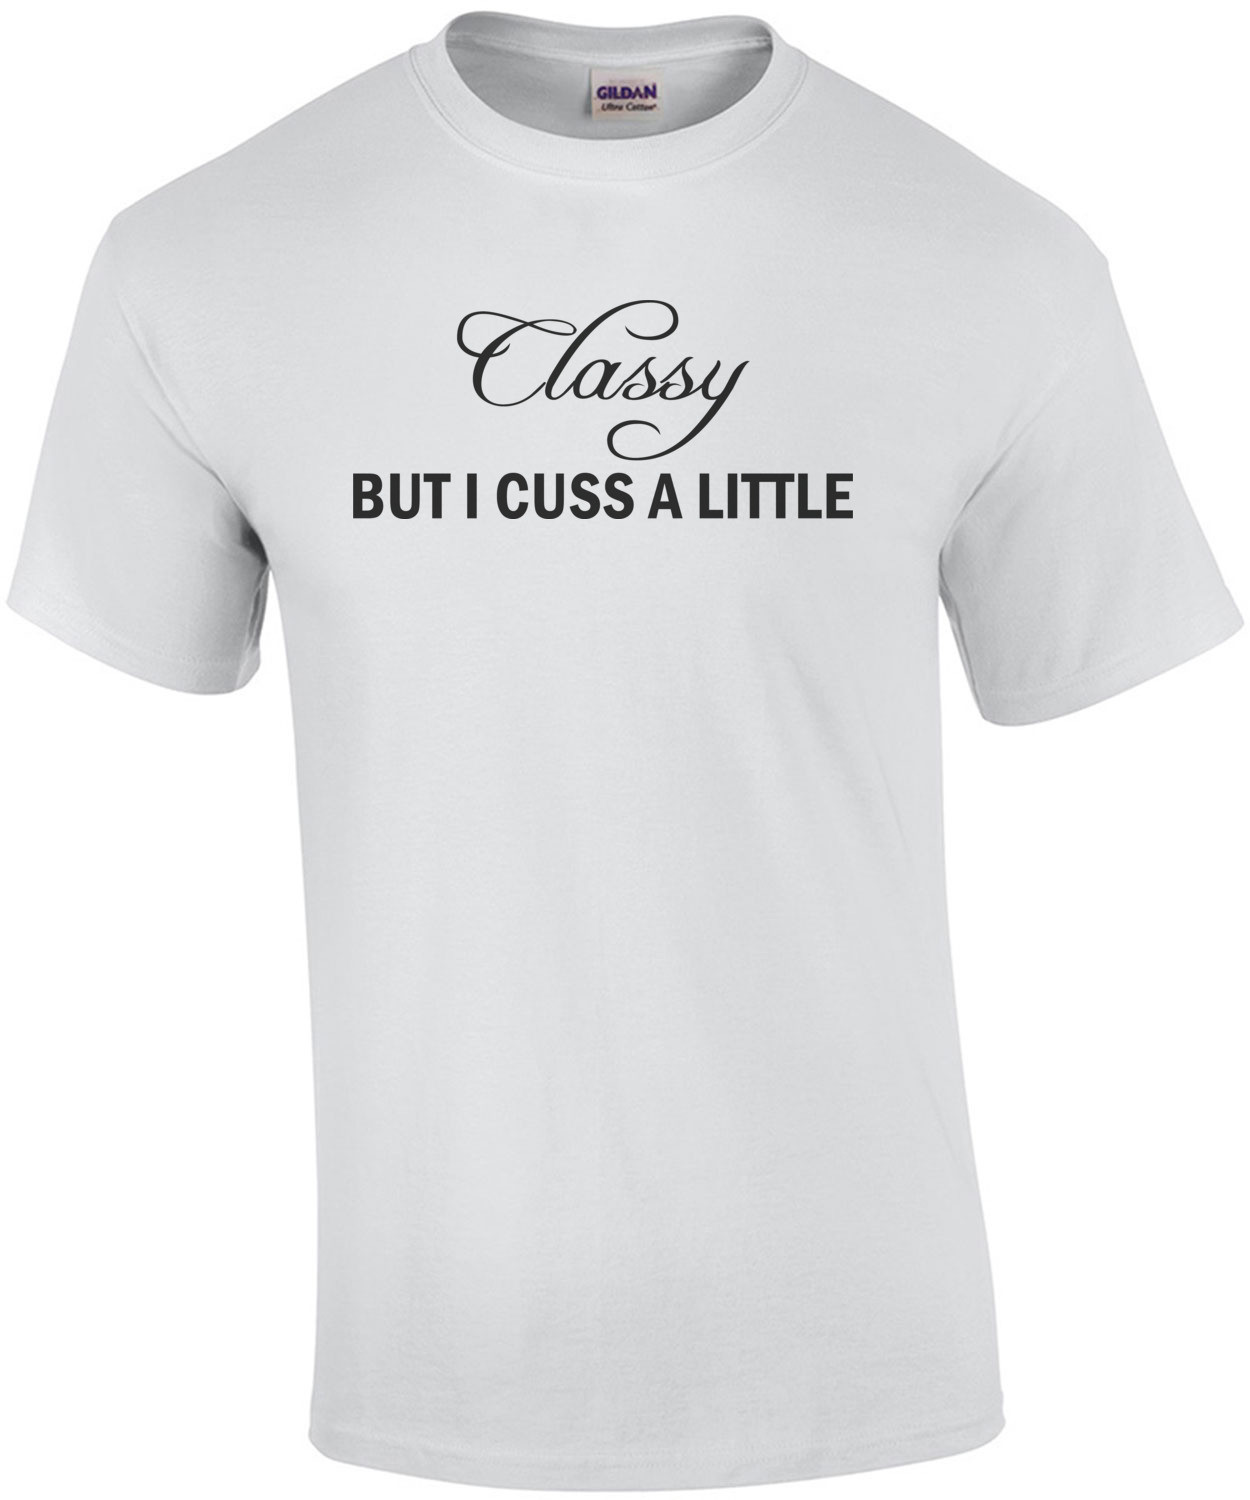 Classy but I cuss a little t-shirt